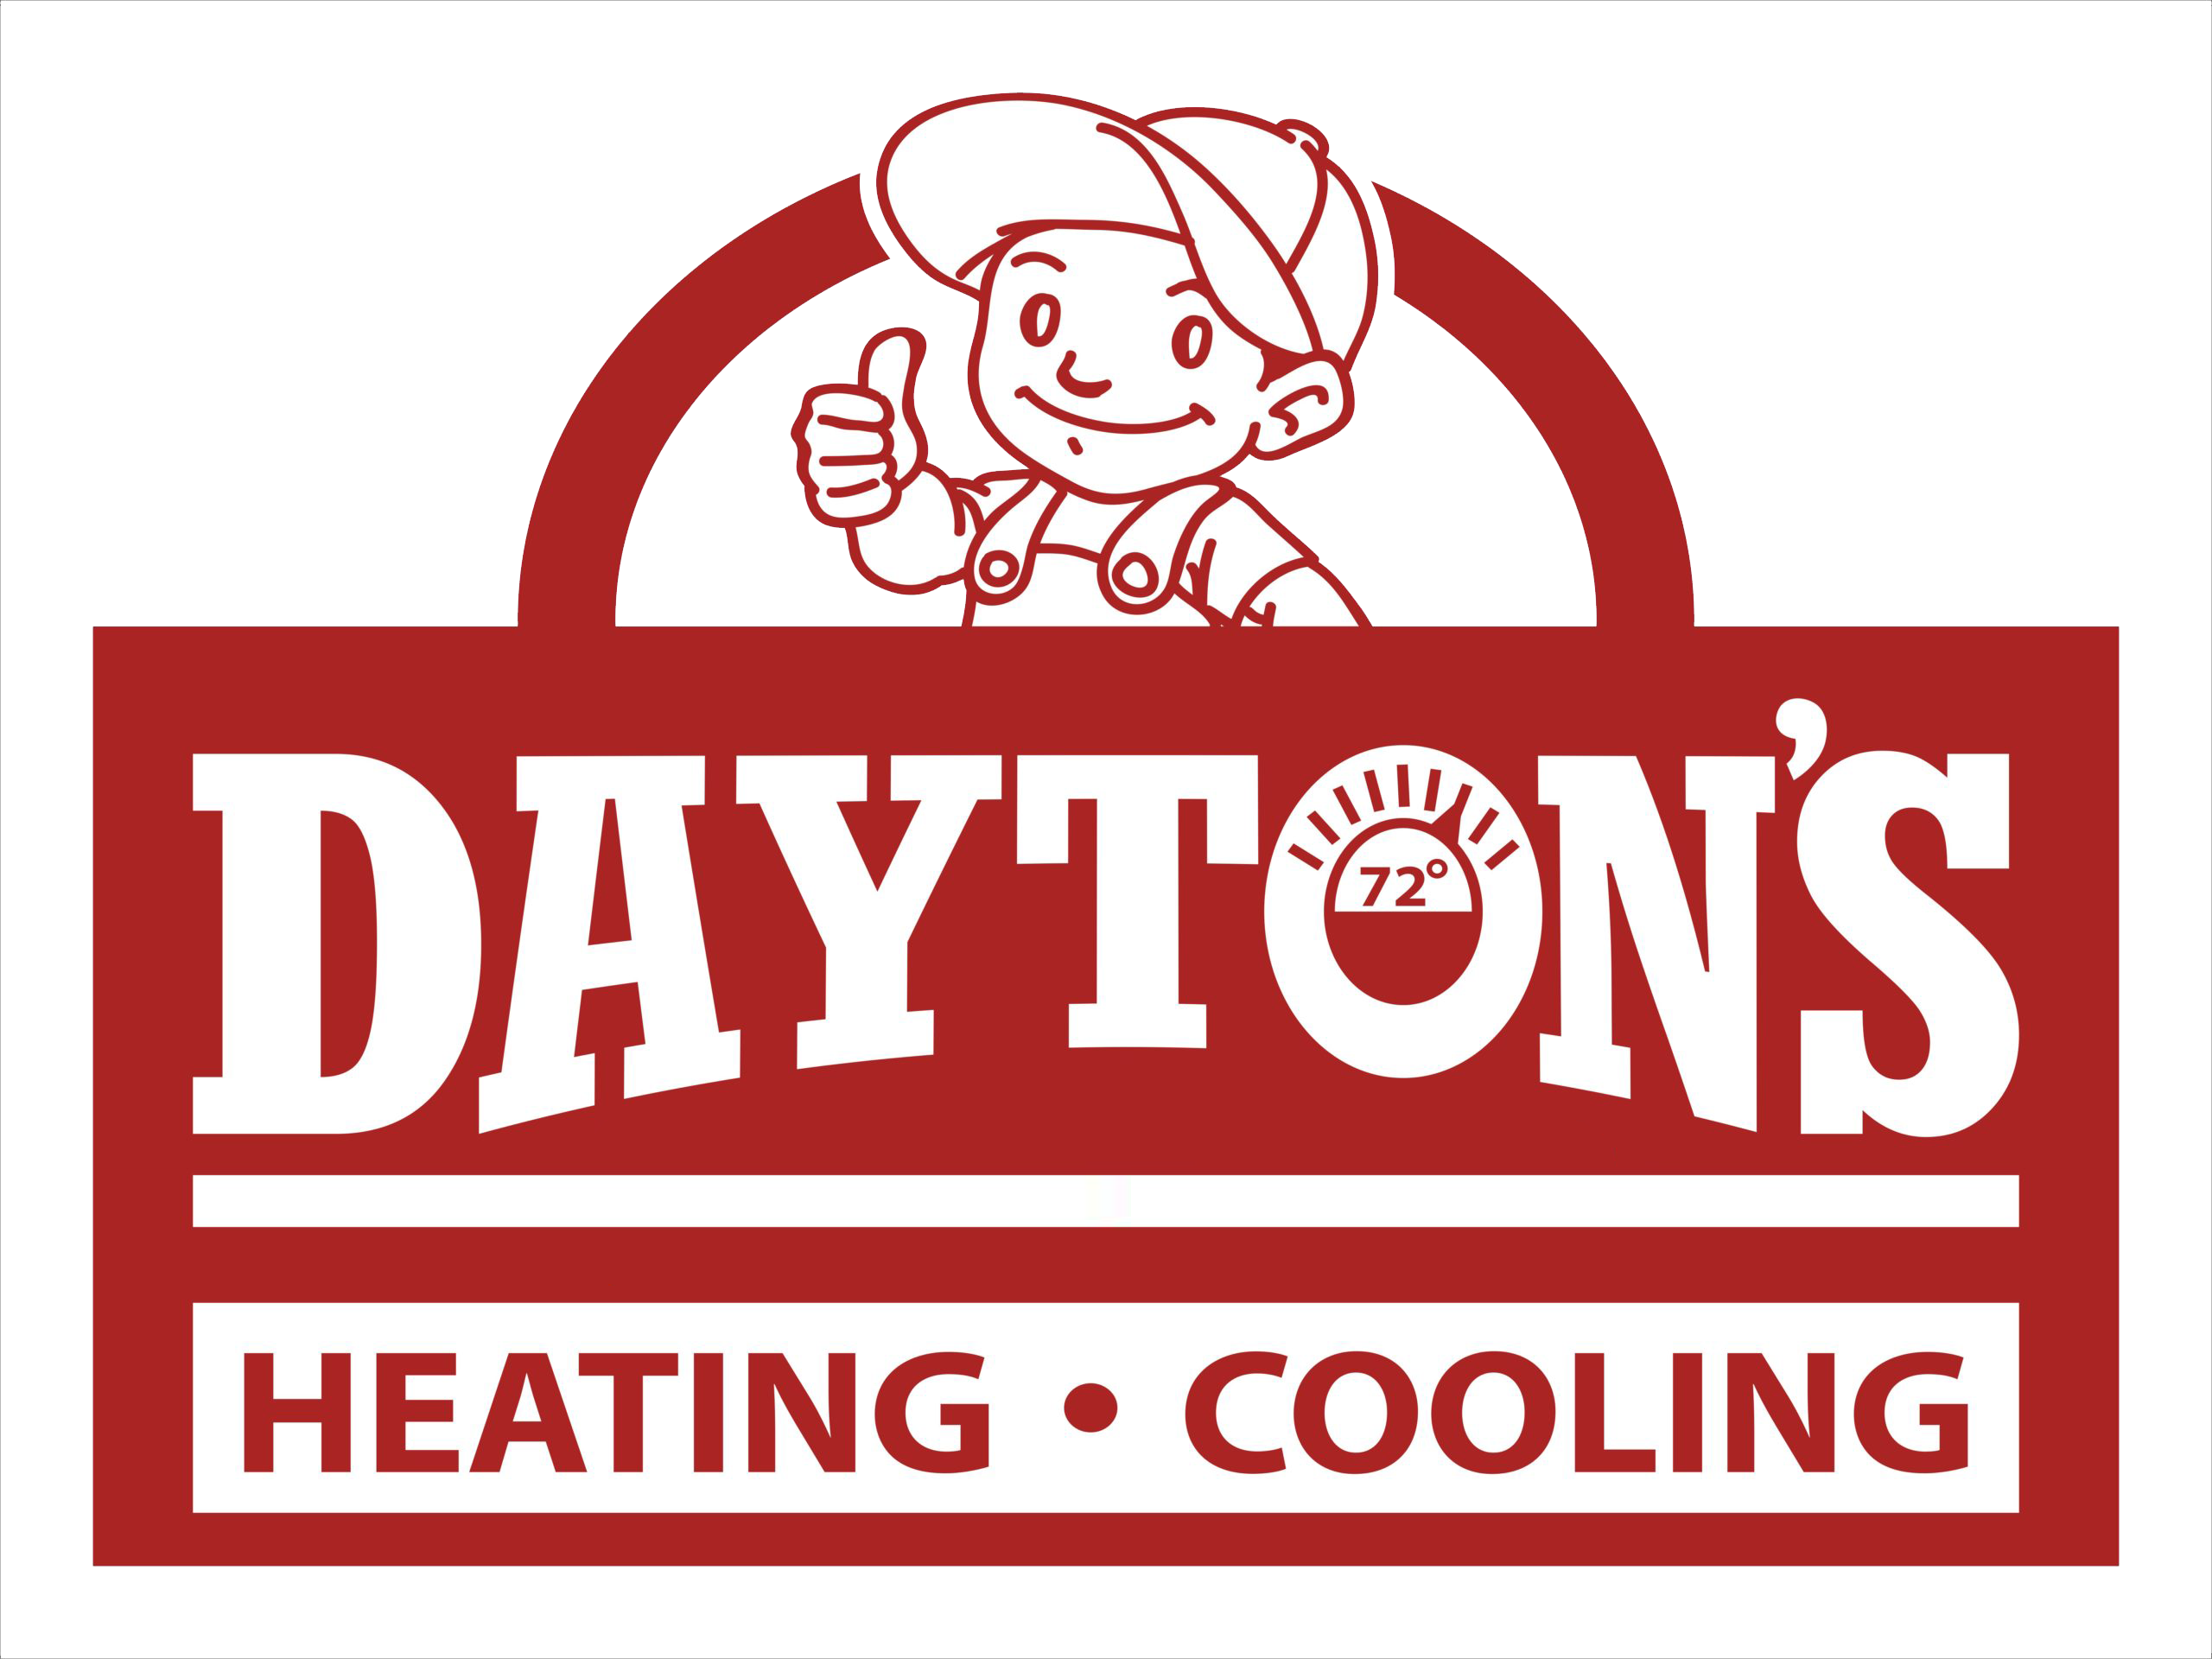 Dayton's coupon logo